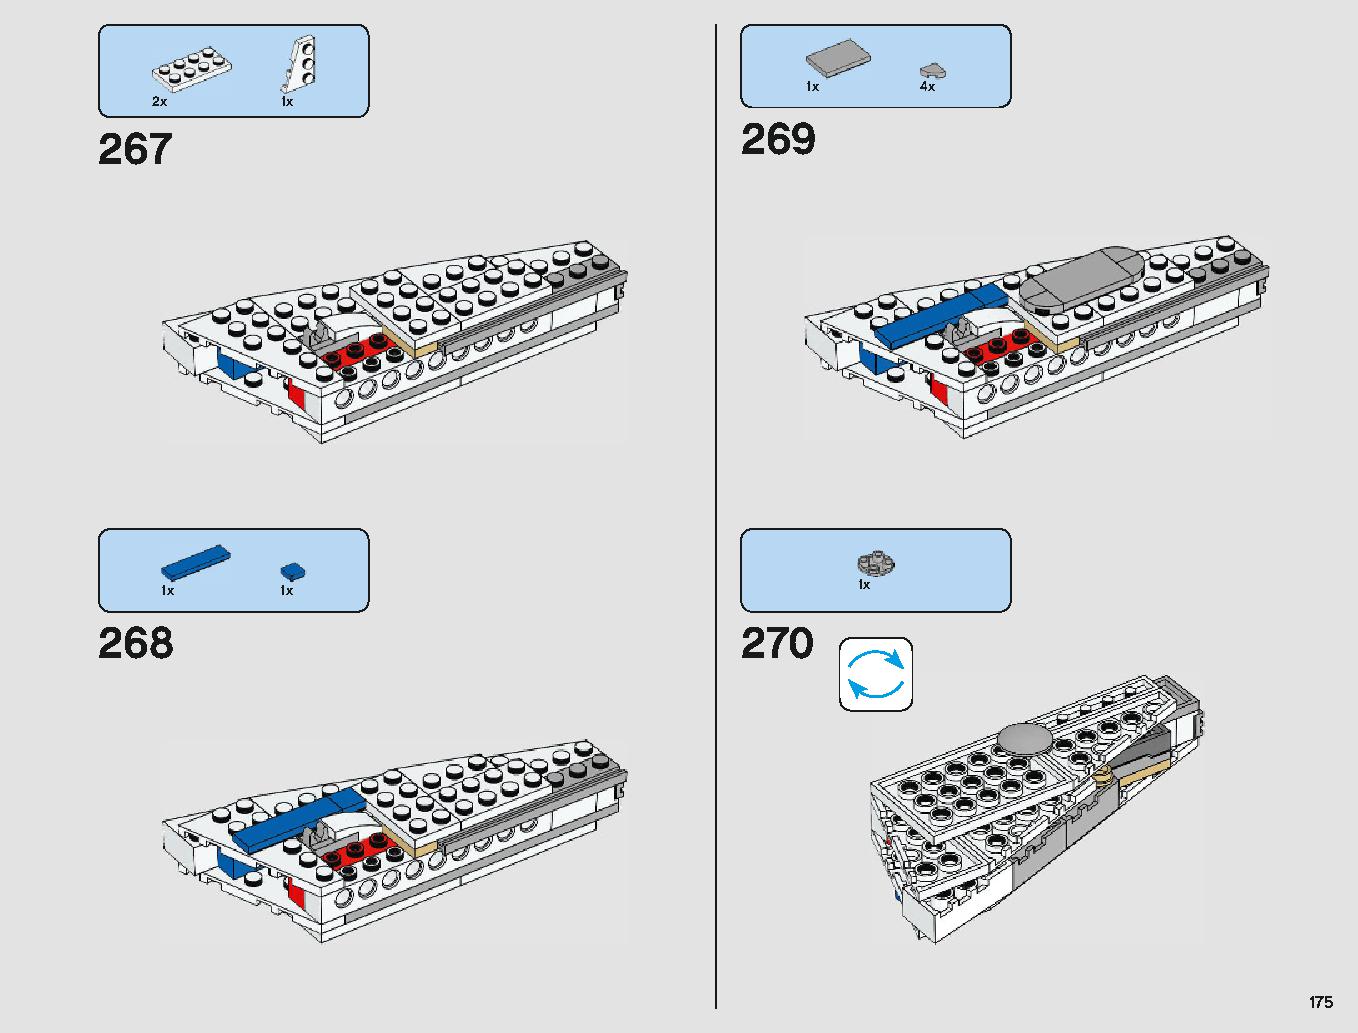 ミレニアム・ファルコン 75212 レゴの商品情報 レゴの説明書・組立方法 175 page